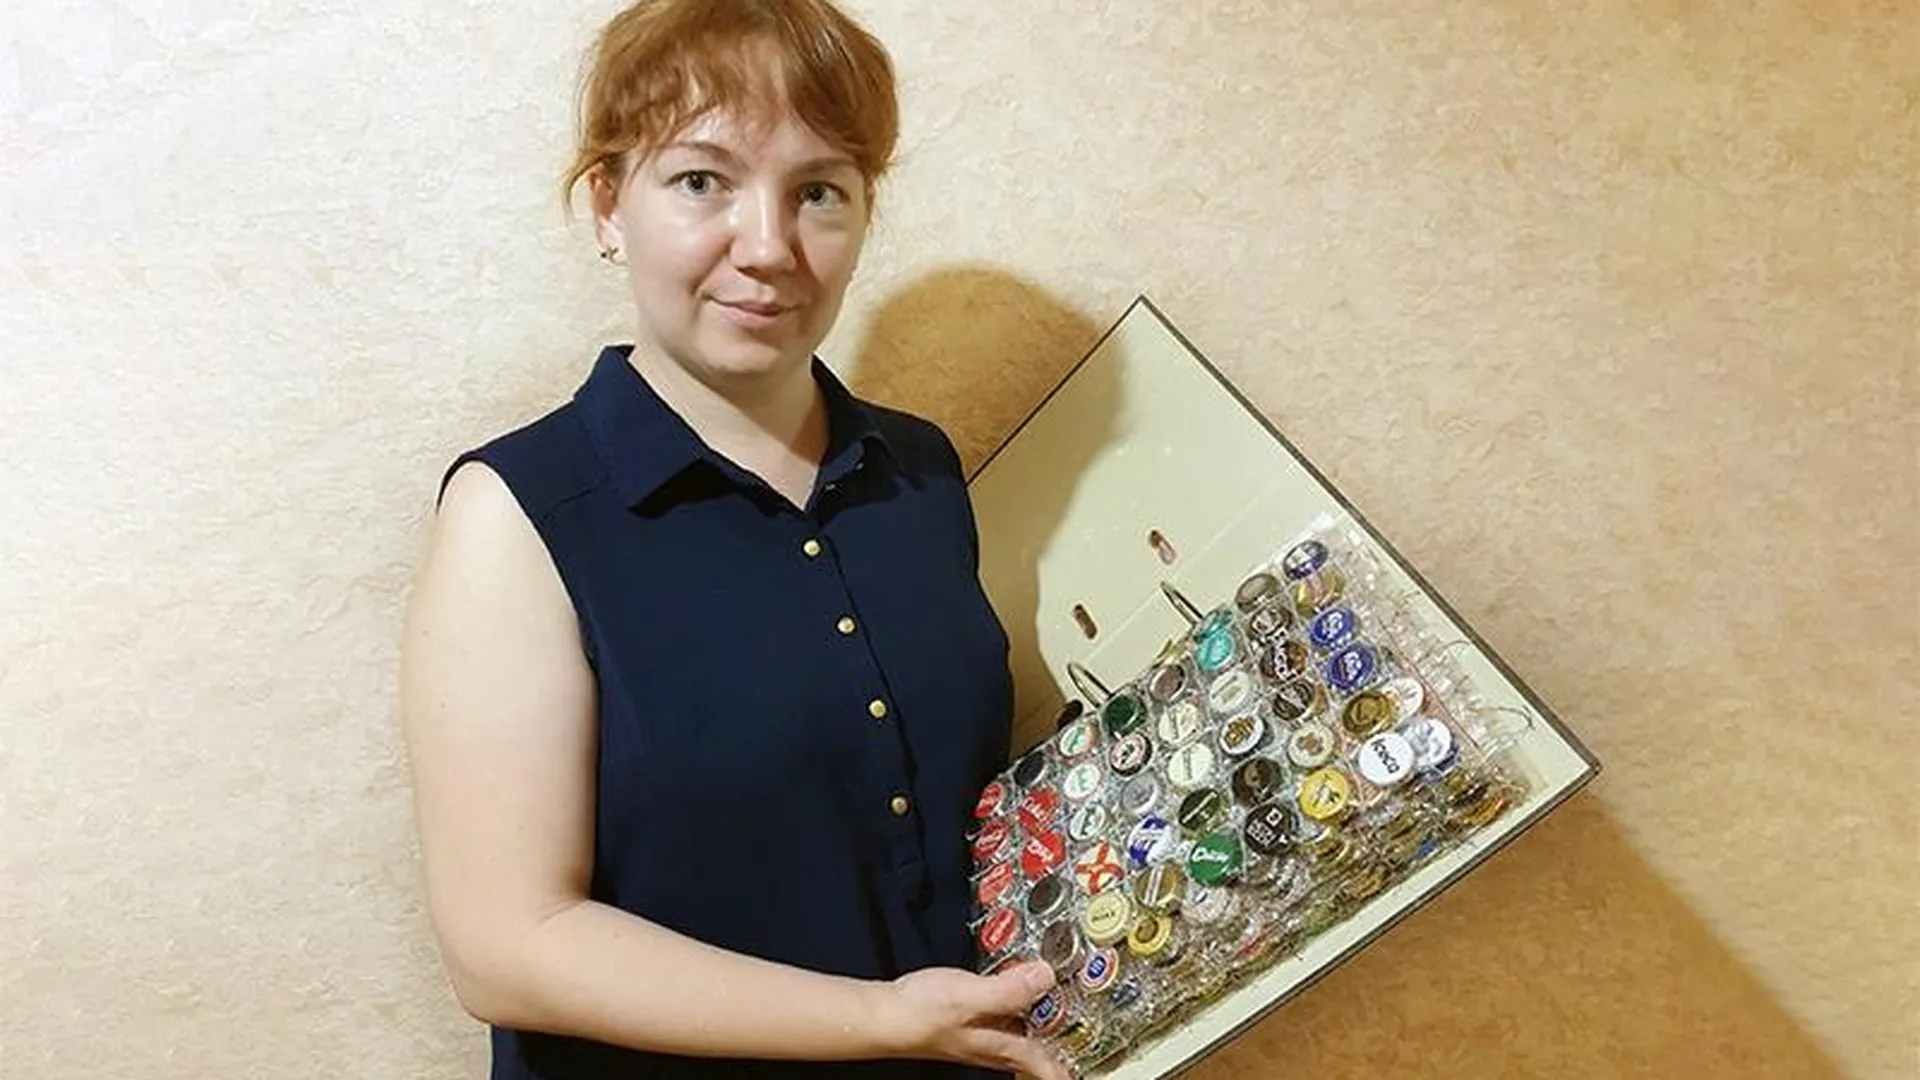 Сыта по горлышко: коллекционер из Щелково около 20 лет собирает бутылочные крышки